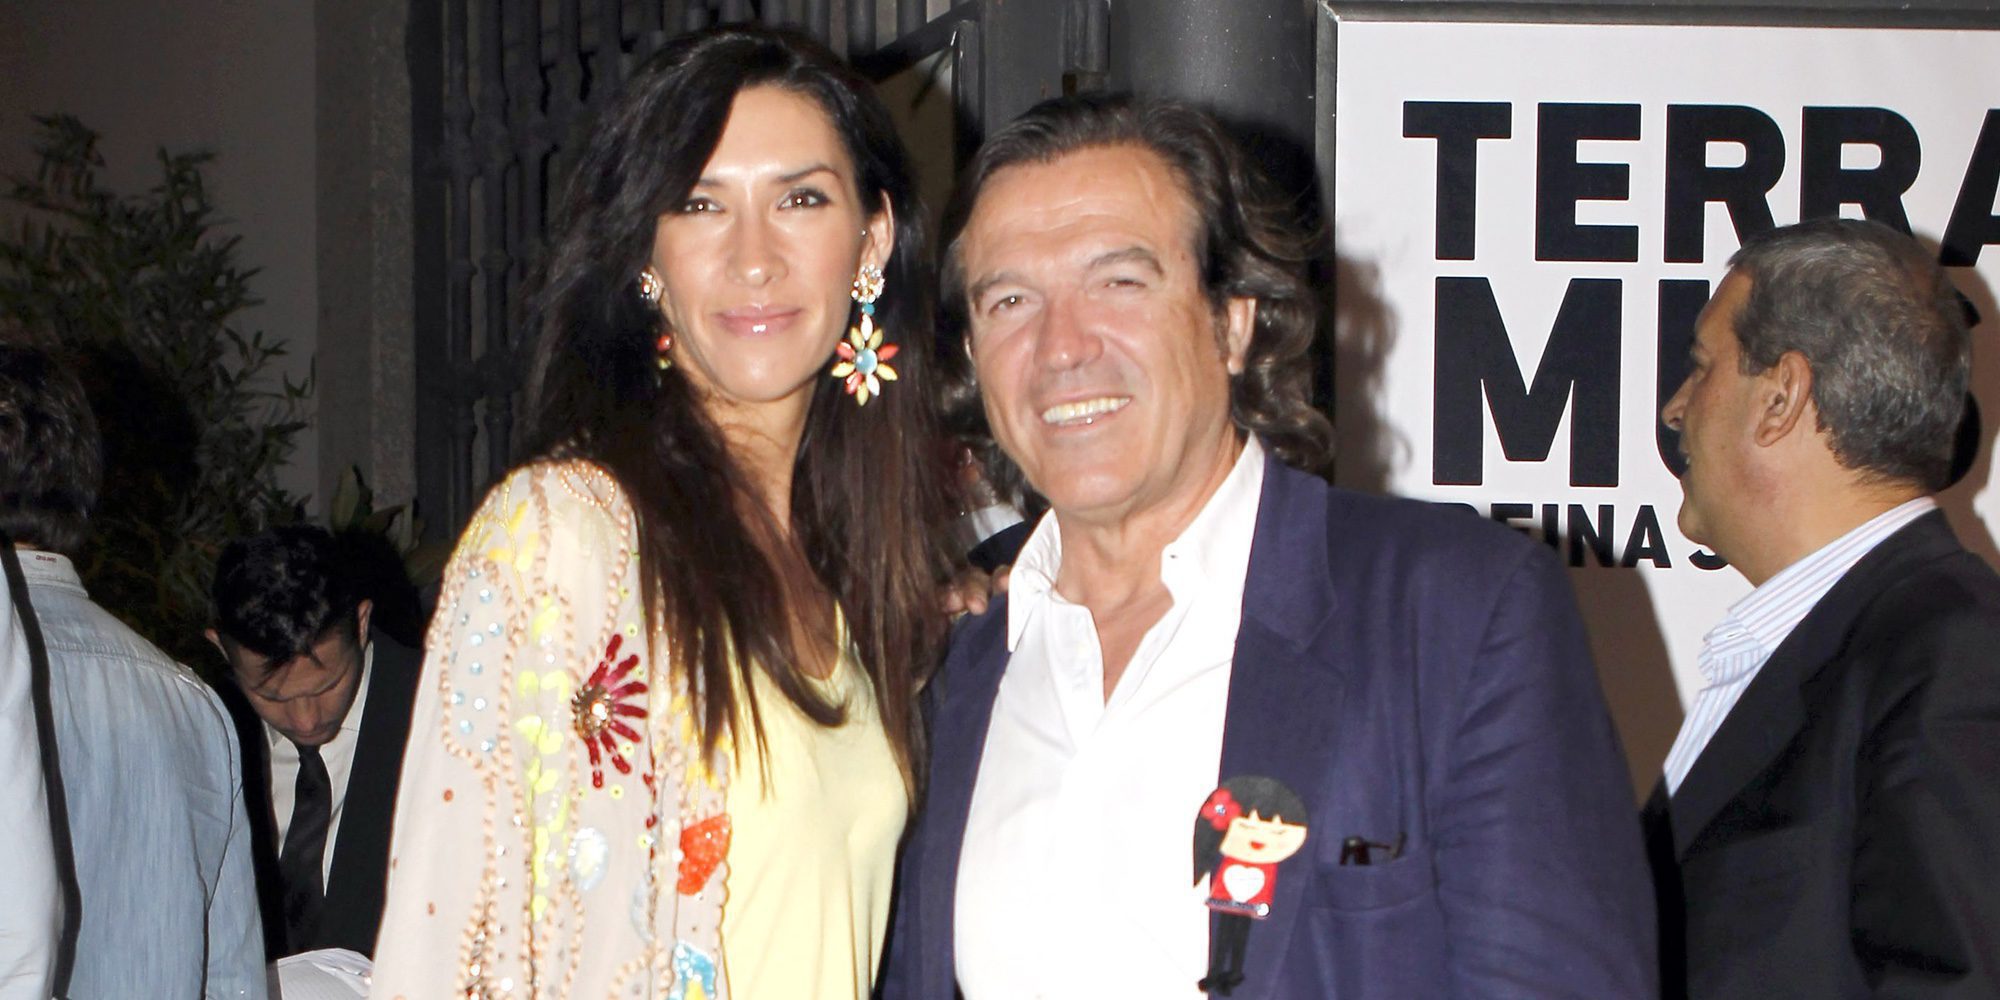 Pepe Navarro y su segunda esposa Lorena Aznar se divorcian